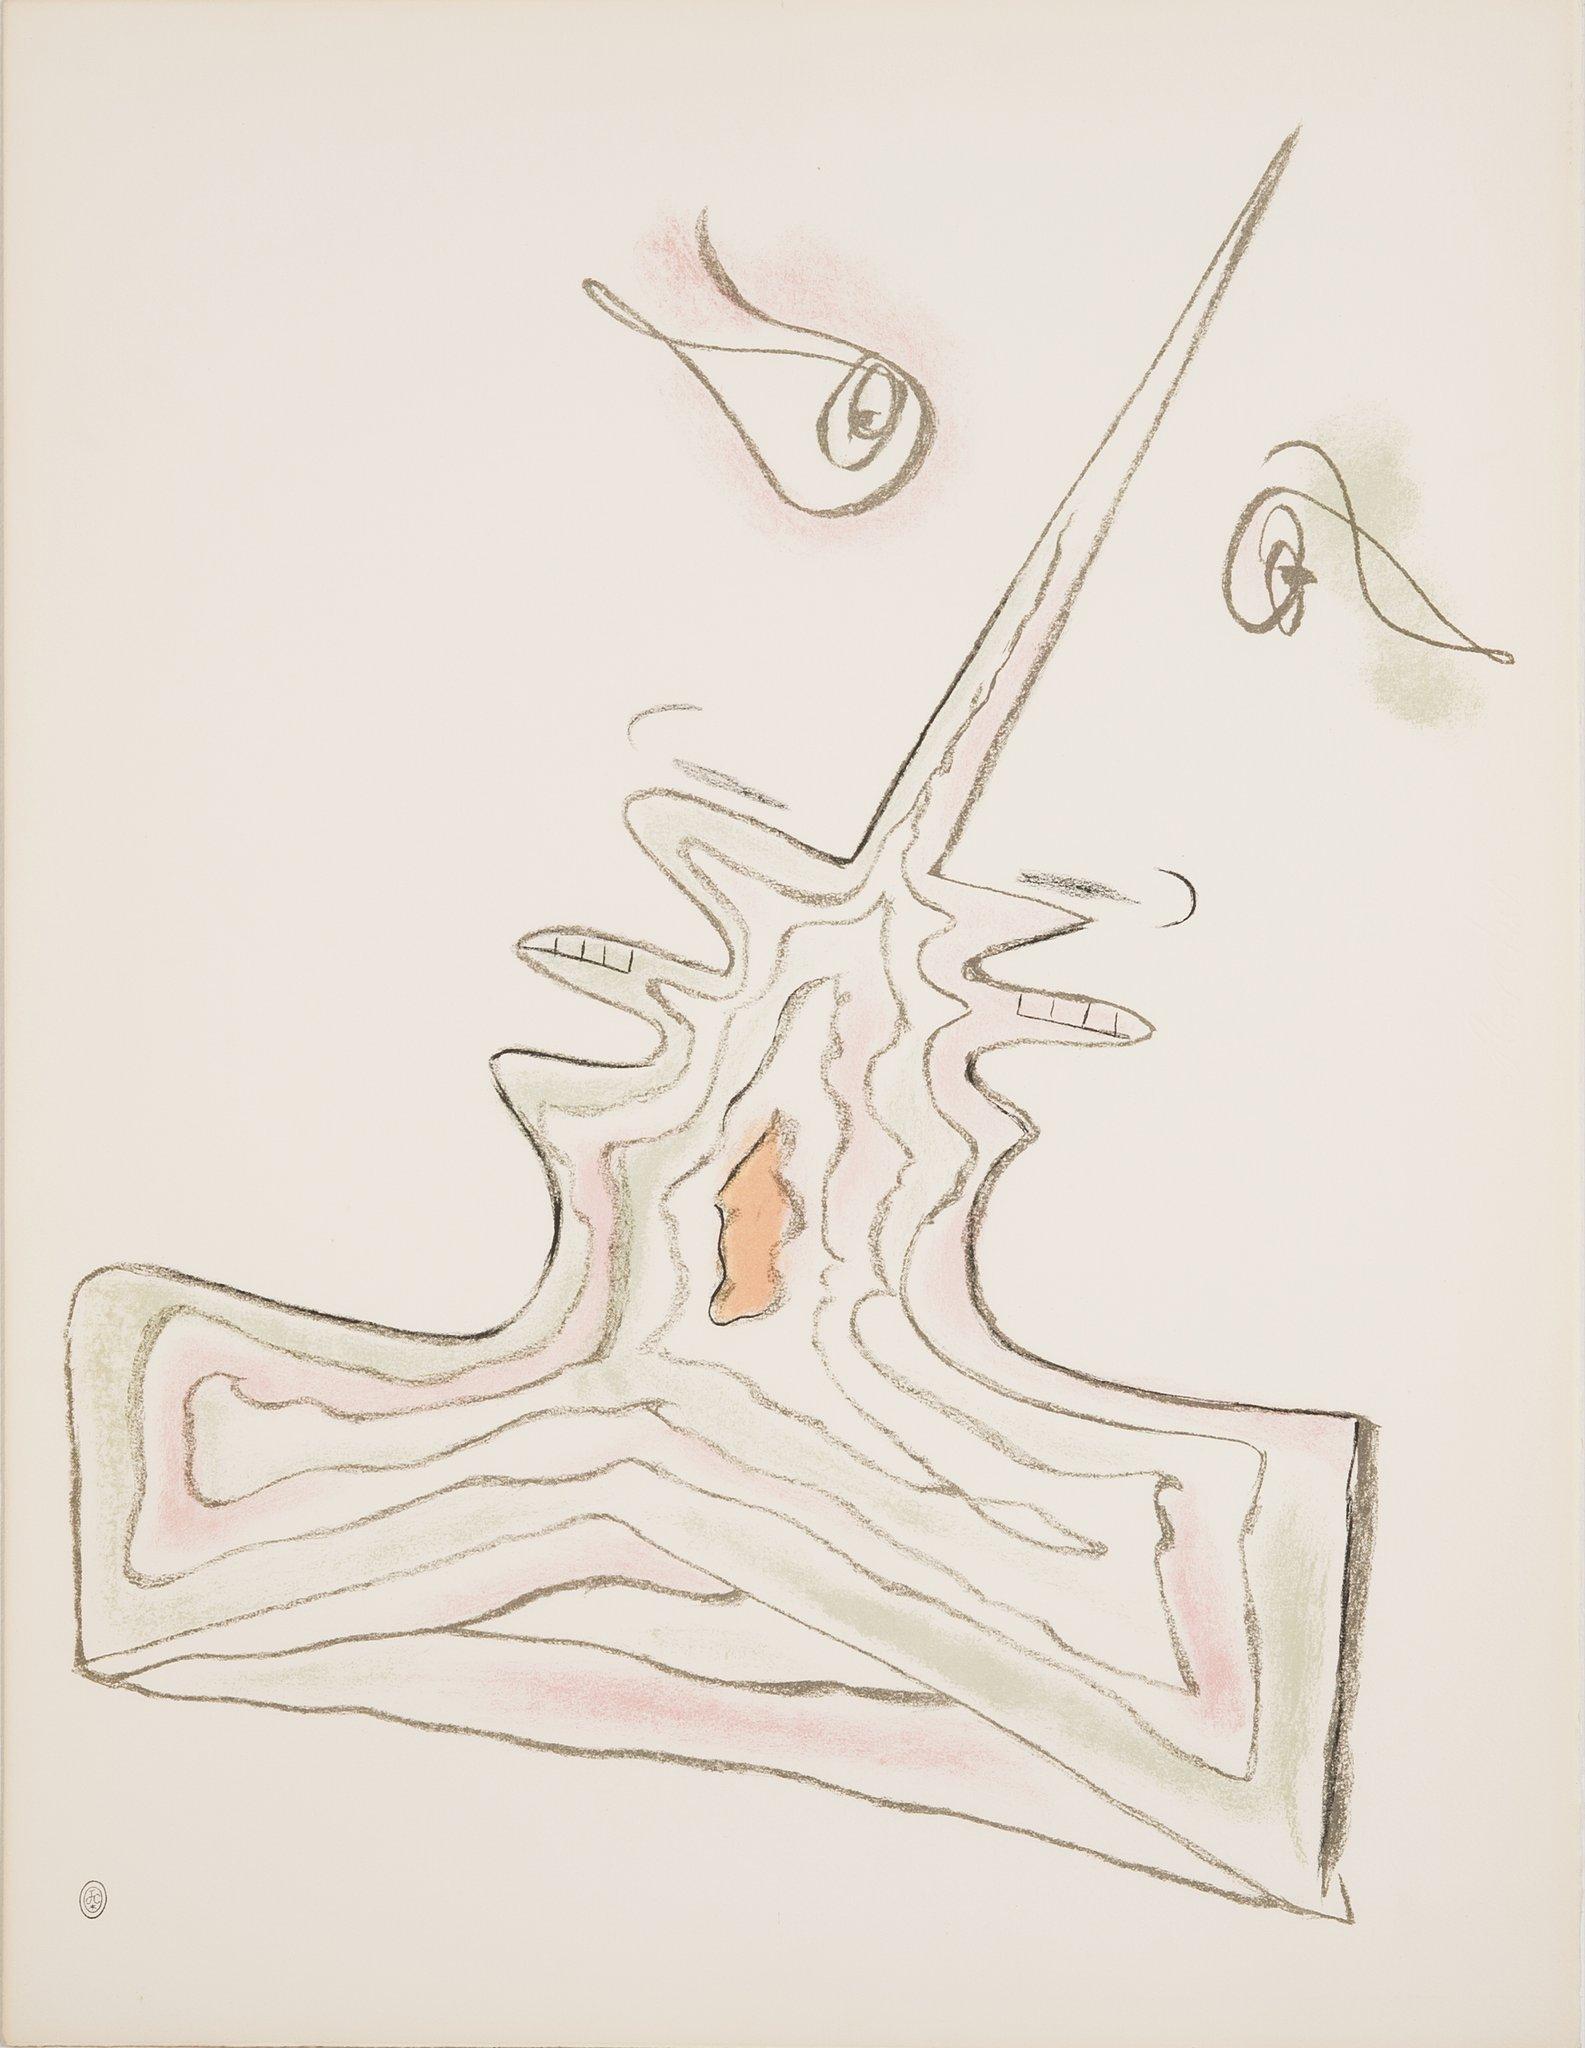 Les Amoureux- From the Album "Jean Cocteau Lithographies" by Jean Cocteau